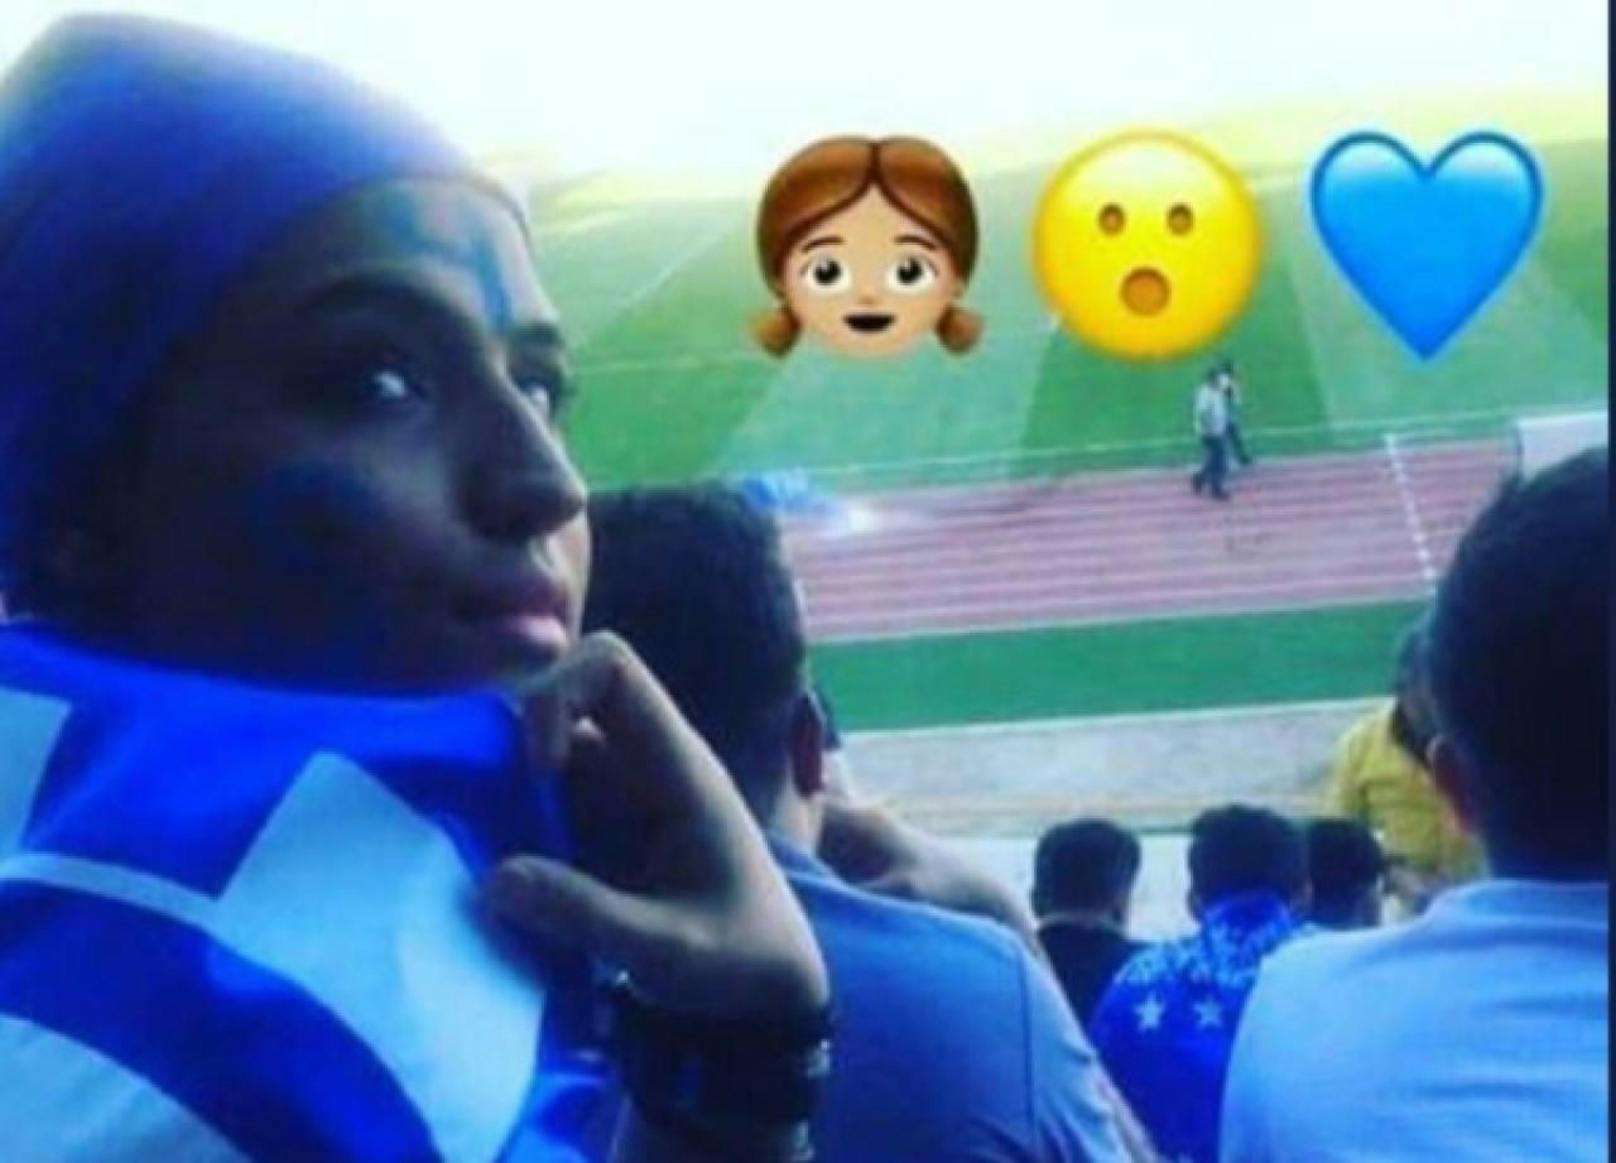 
Sahar Khodayari liebte den Fußball und wollte ihre Mannschaft im Stadion spielen sehen.